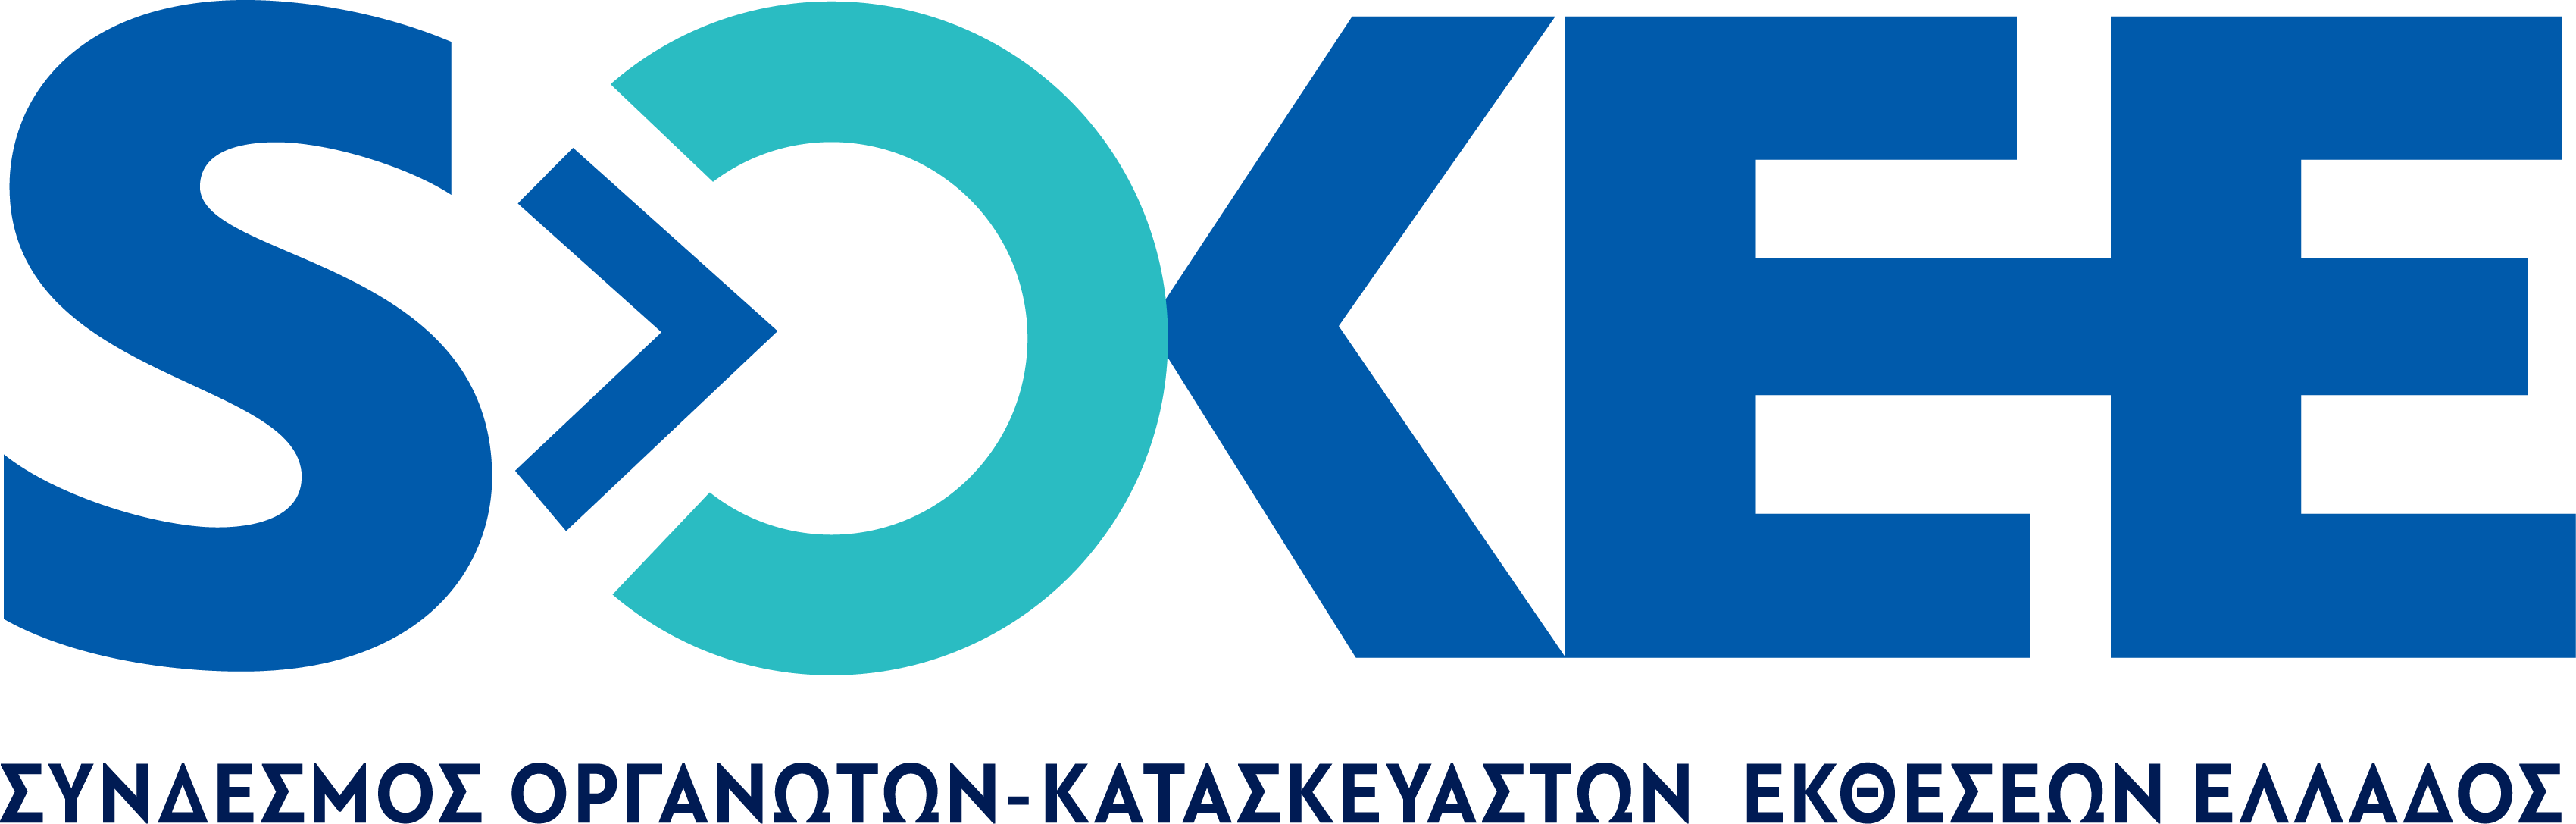 ΣΟΚΕΕ: Ίδρυση Συνδέσμου Οργανωτών, Κατασκευαστών Εκθέσεων Ελλάδος